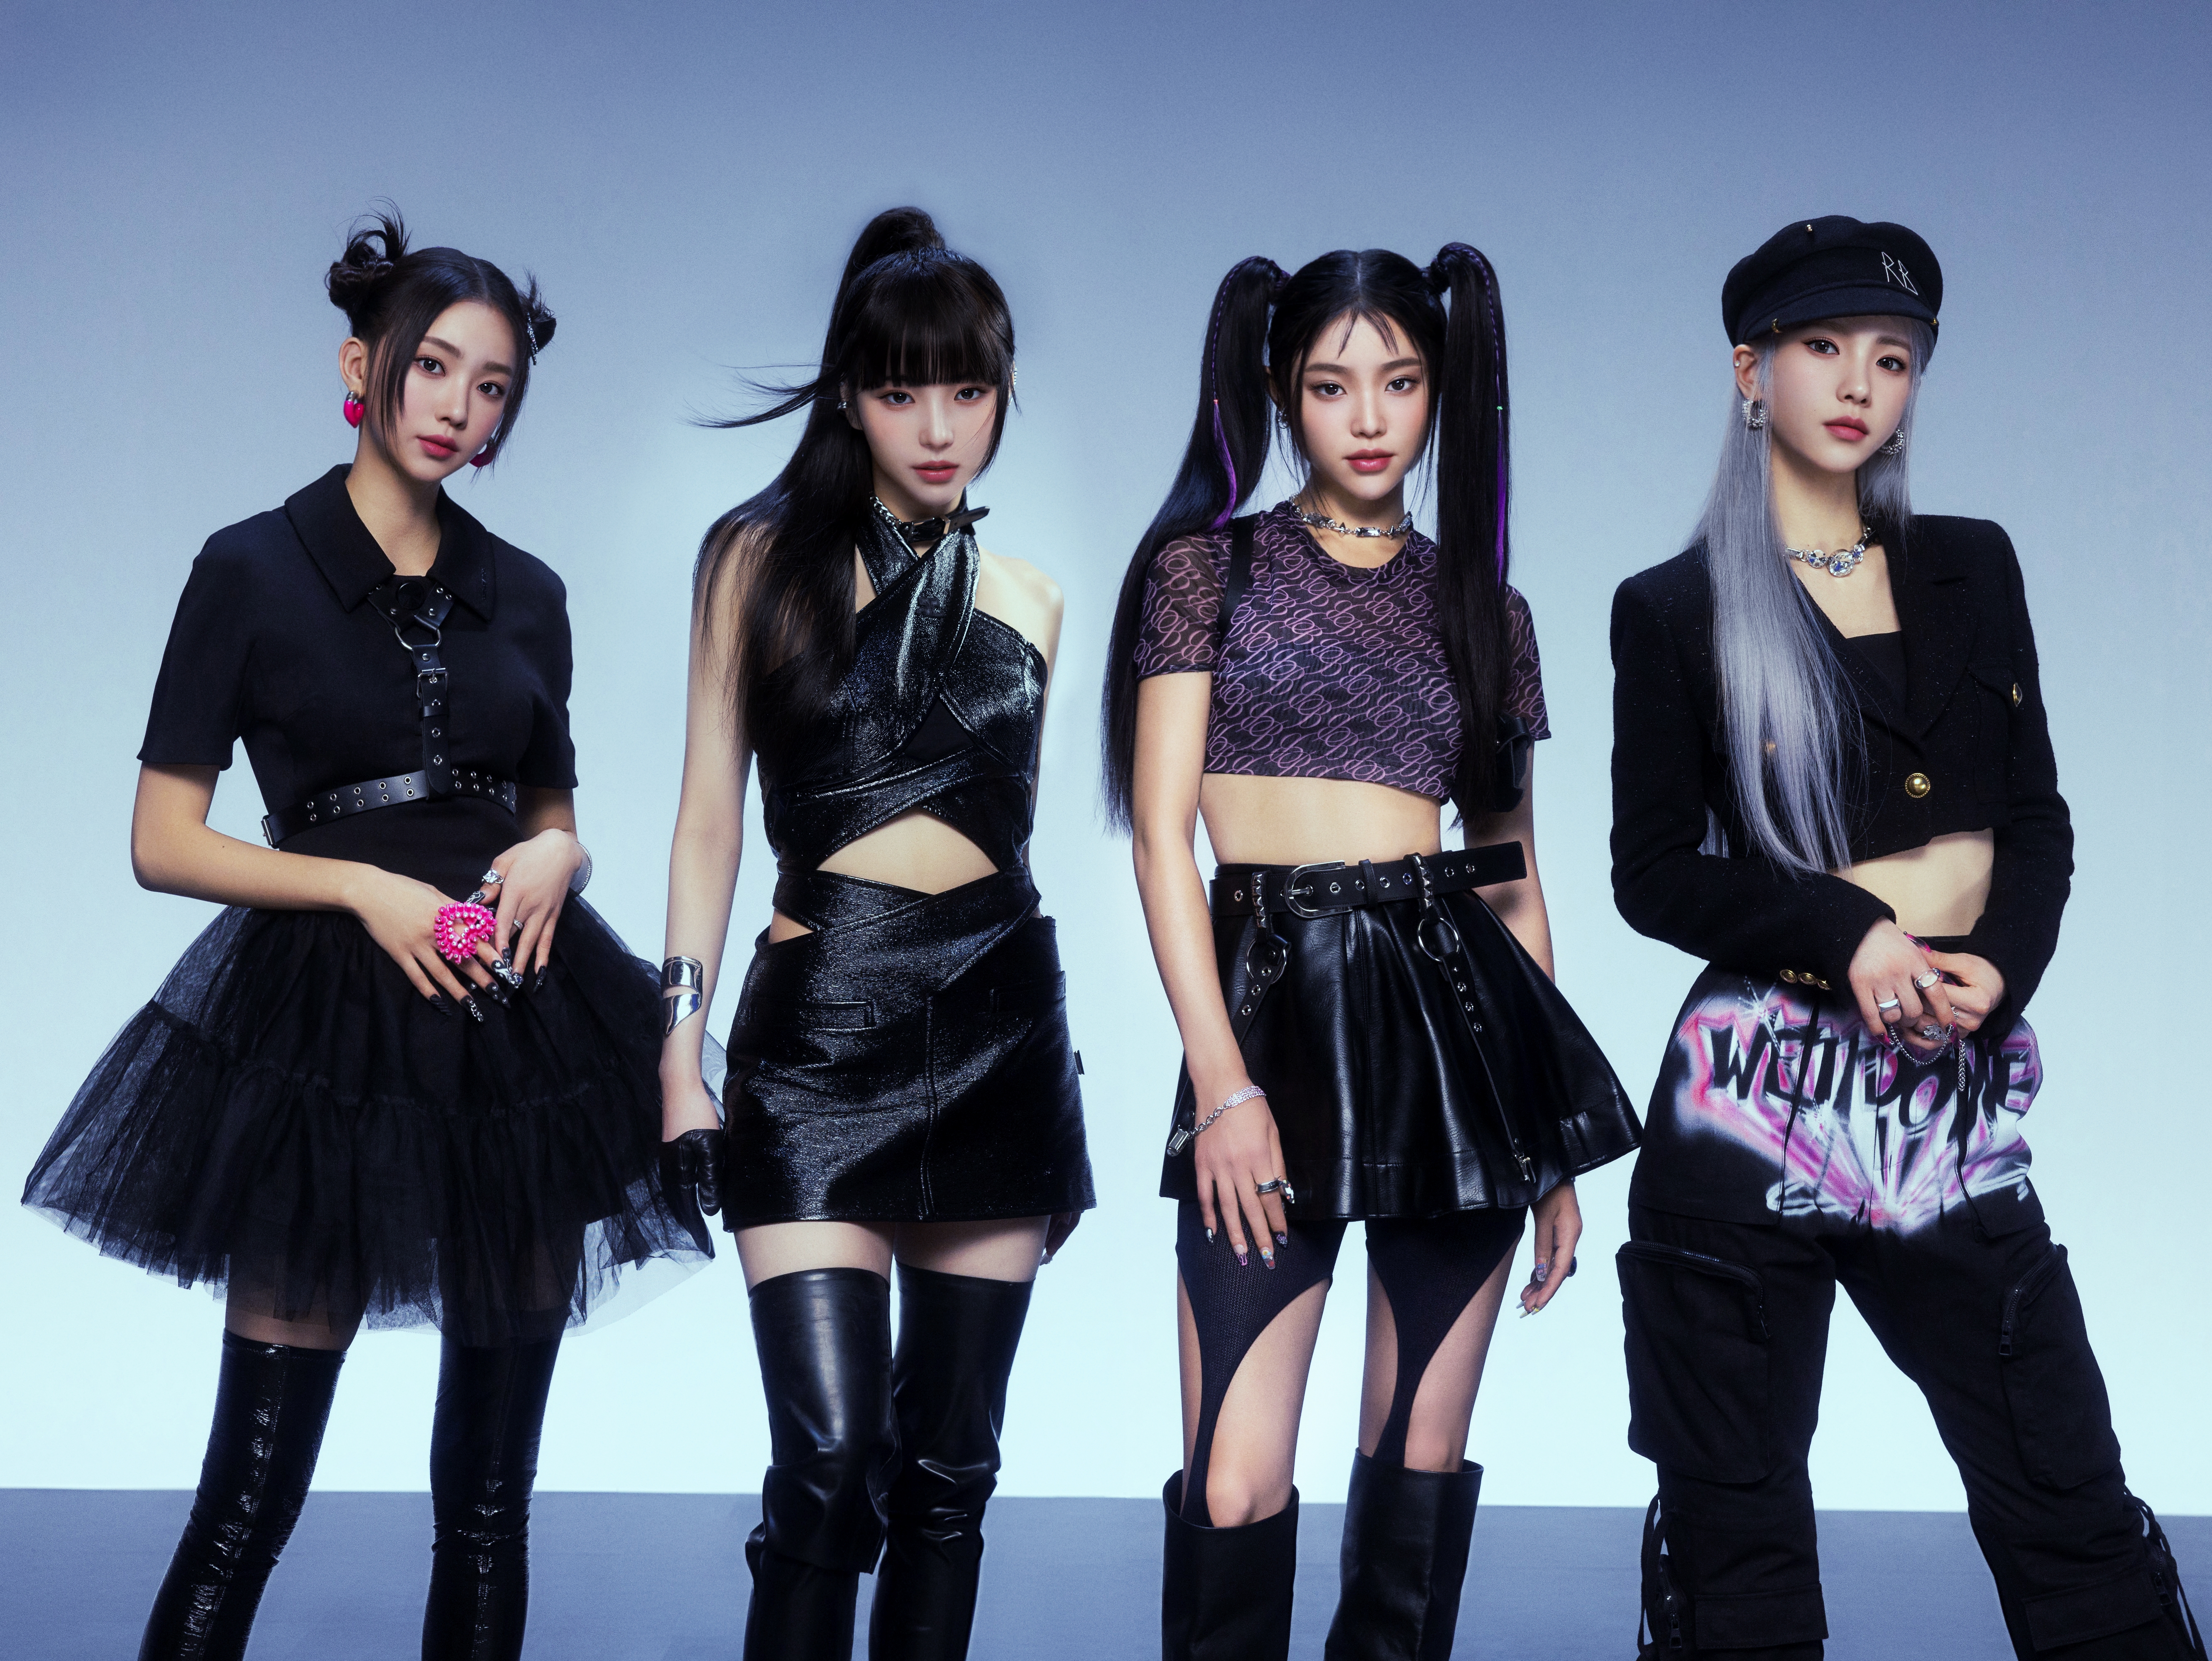 バーチャルヒューマンによるK-POPグループ「MAVE:（メイブ）」が韓国からデビュー、メンバーのビジュアルが初公開